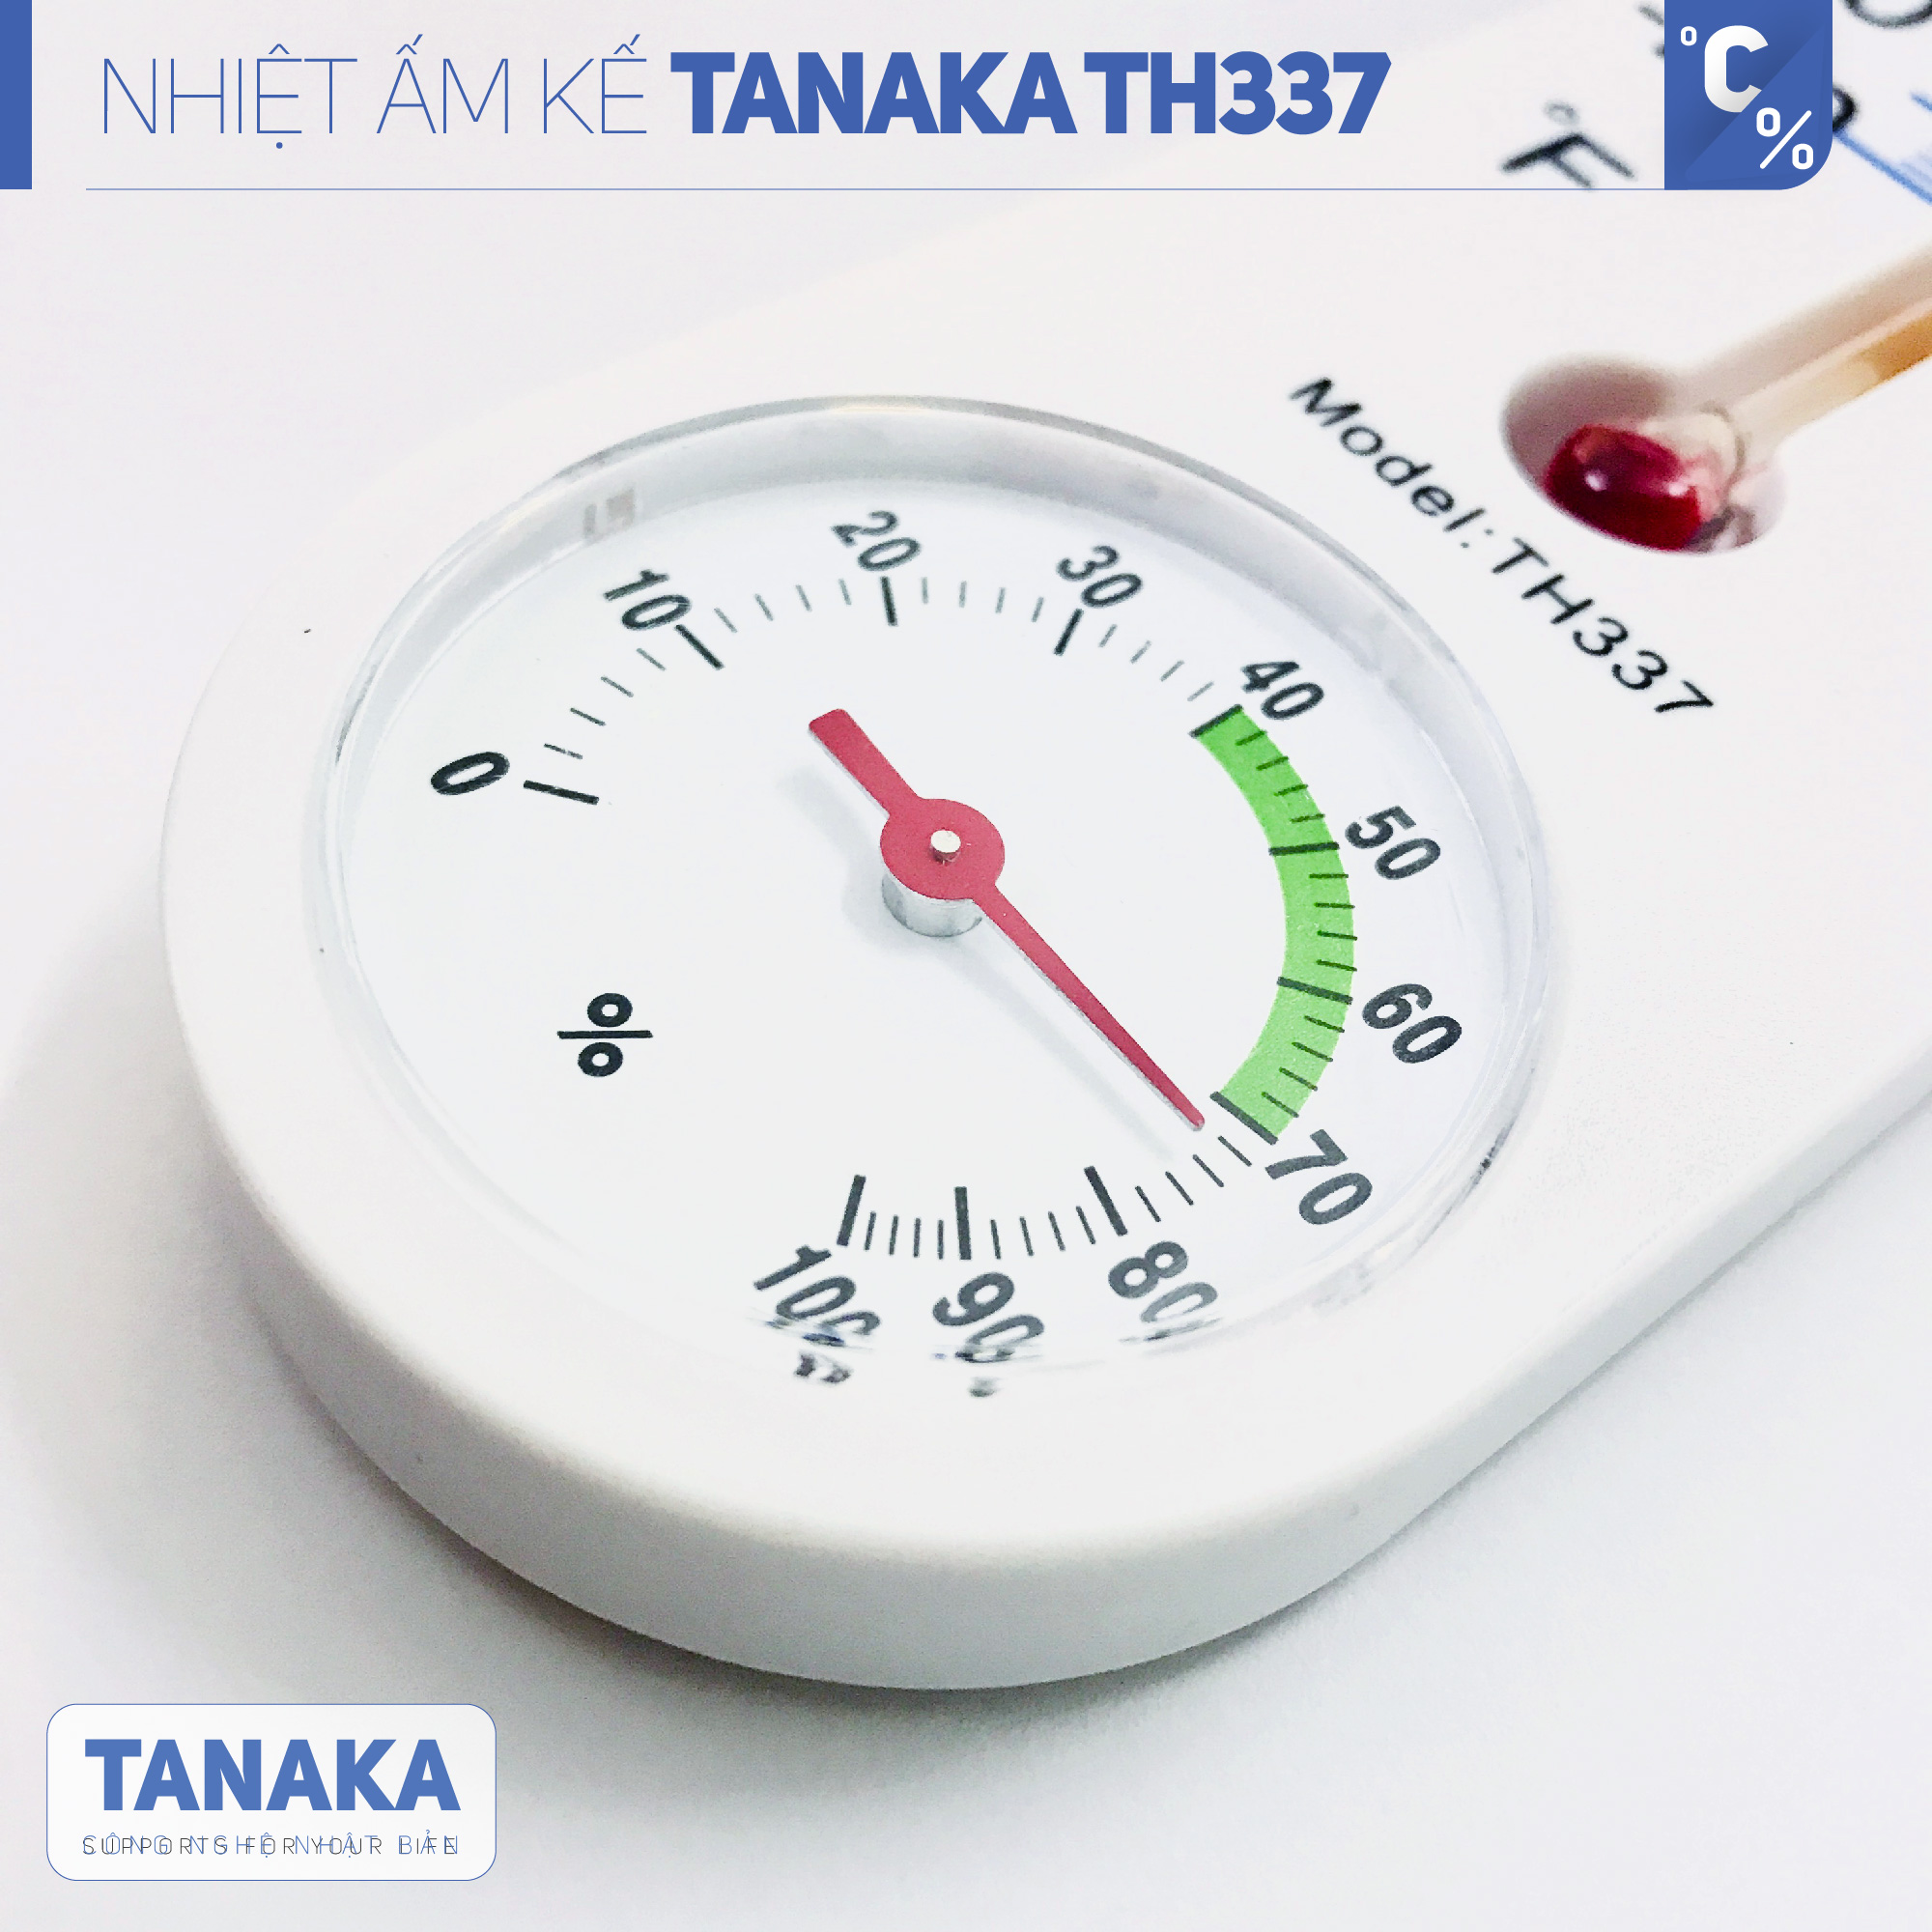 Nhiệt ẩm kế đo nhiệt độ, độ ẩm TANAKA TH337 công nghệ nhật bản, treo tường, dùng cho gia đình, bệnh viện, bền đẹp, Simcom